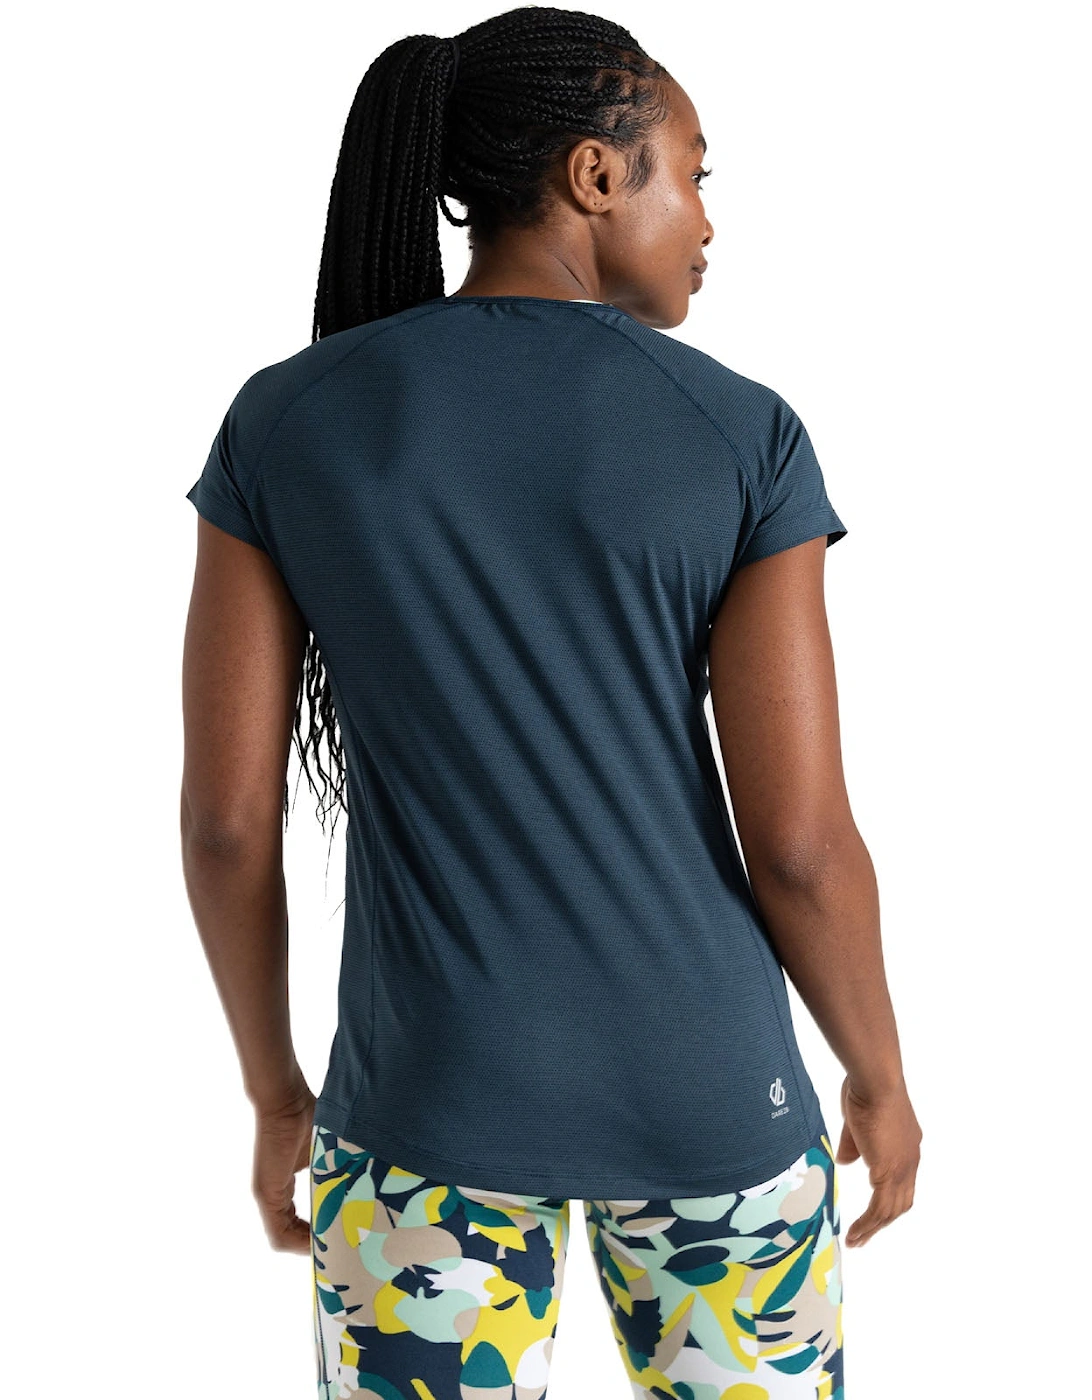 Womens Corral Lightweight Short Sleeve T-Shirt